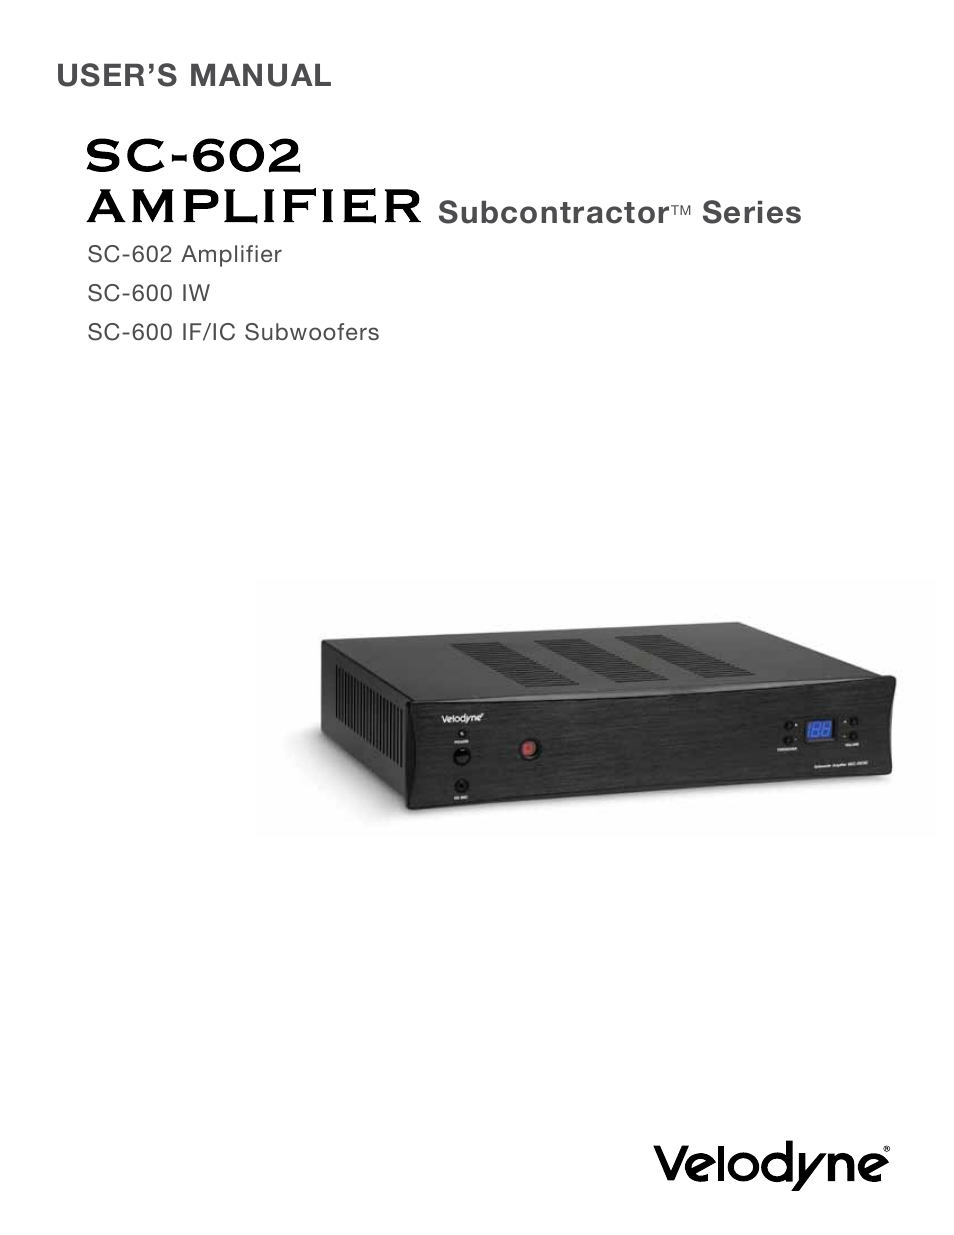 SC-602 Amplifier